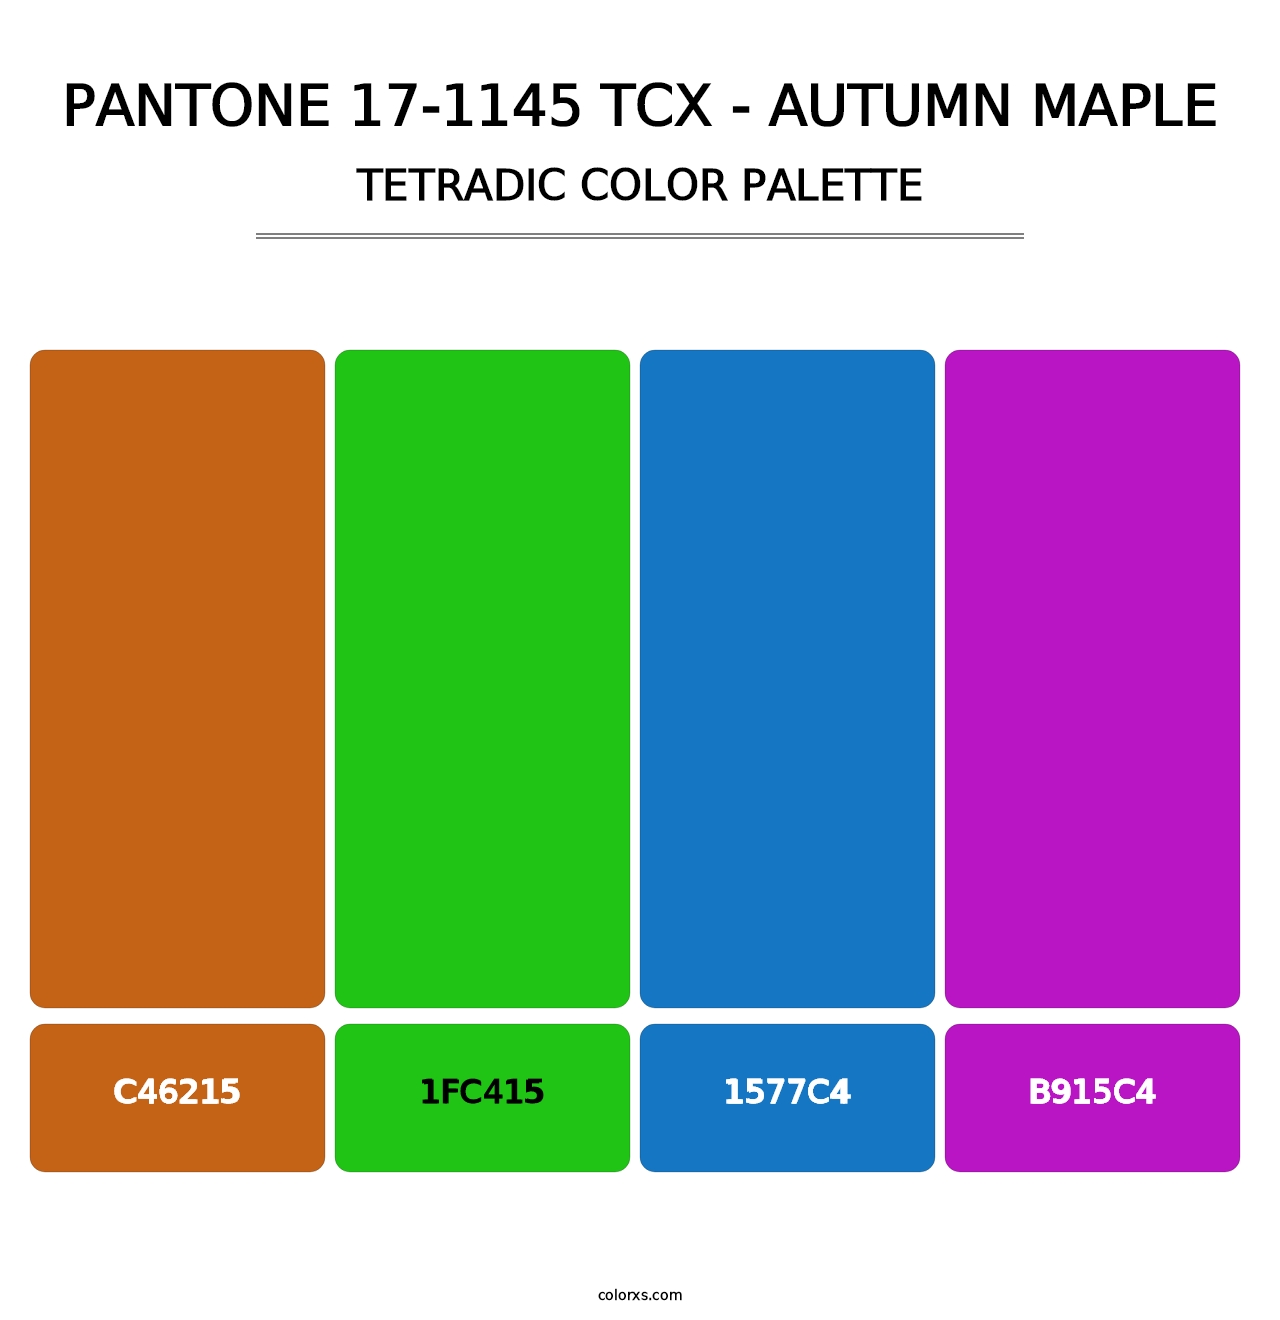 PANTONE 17-1145 TCX - Autumn Maple - Tetradic Color Palette